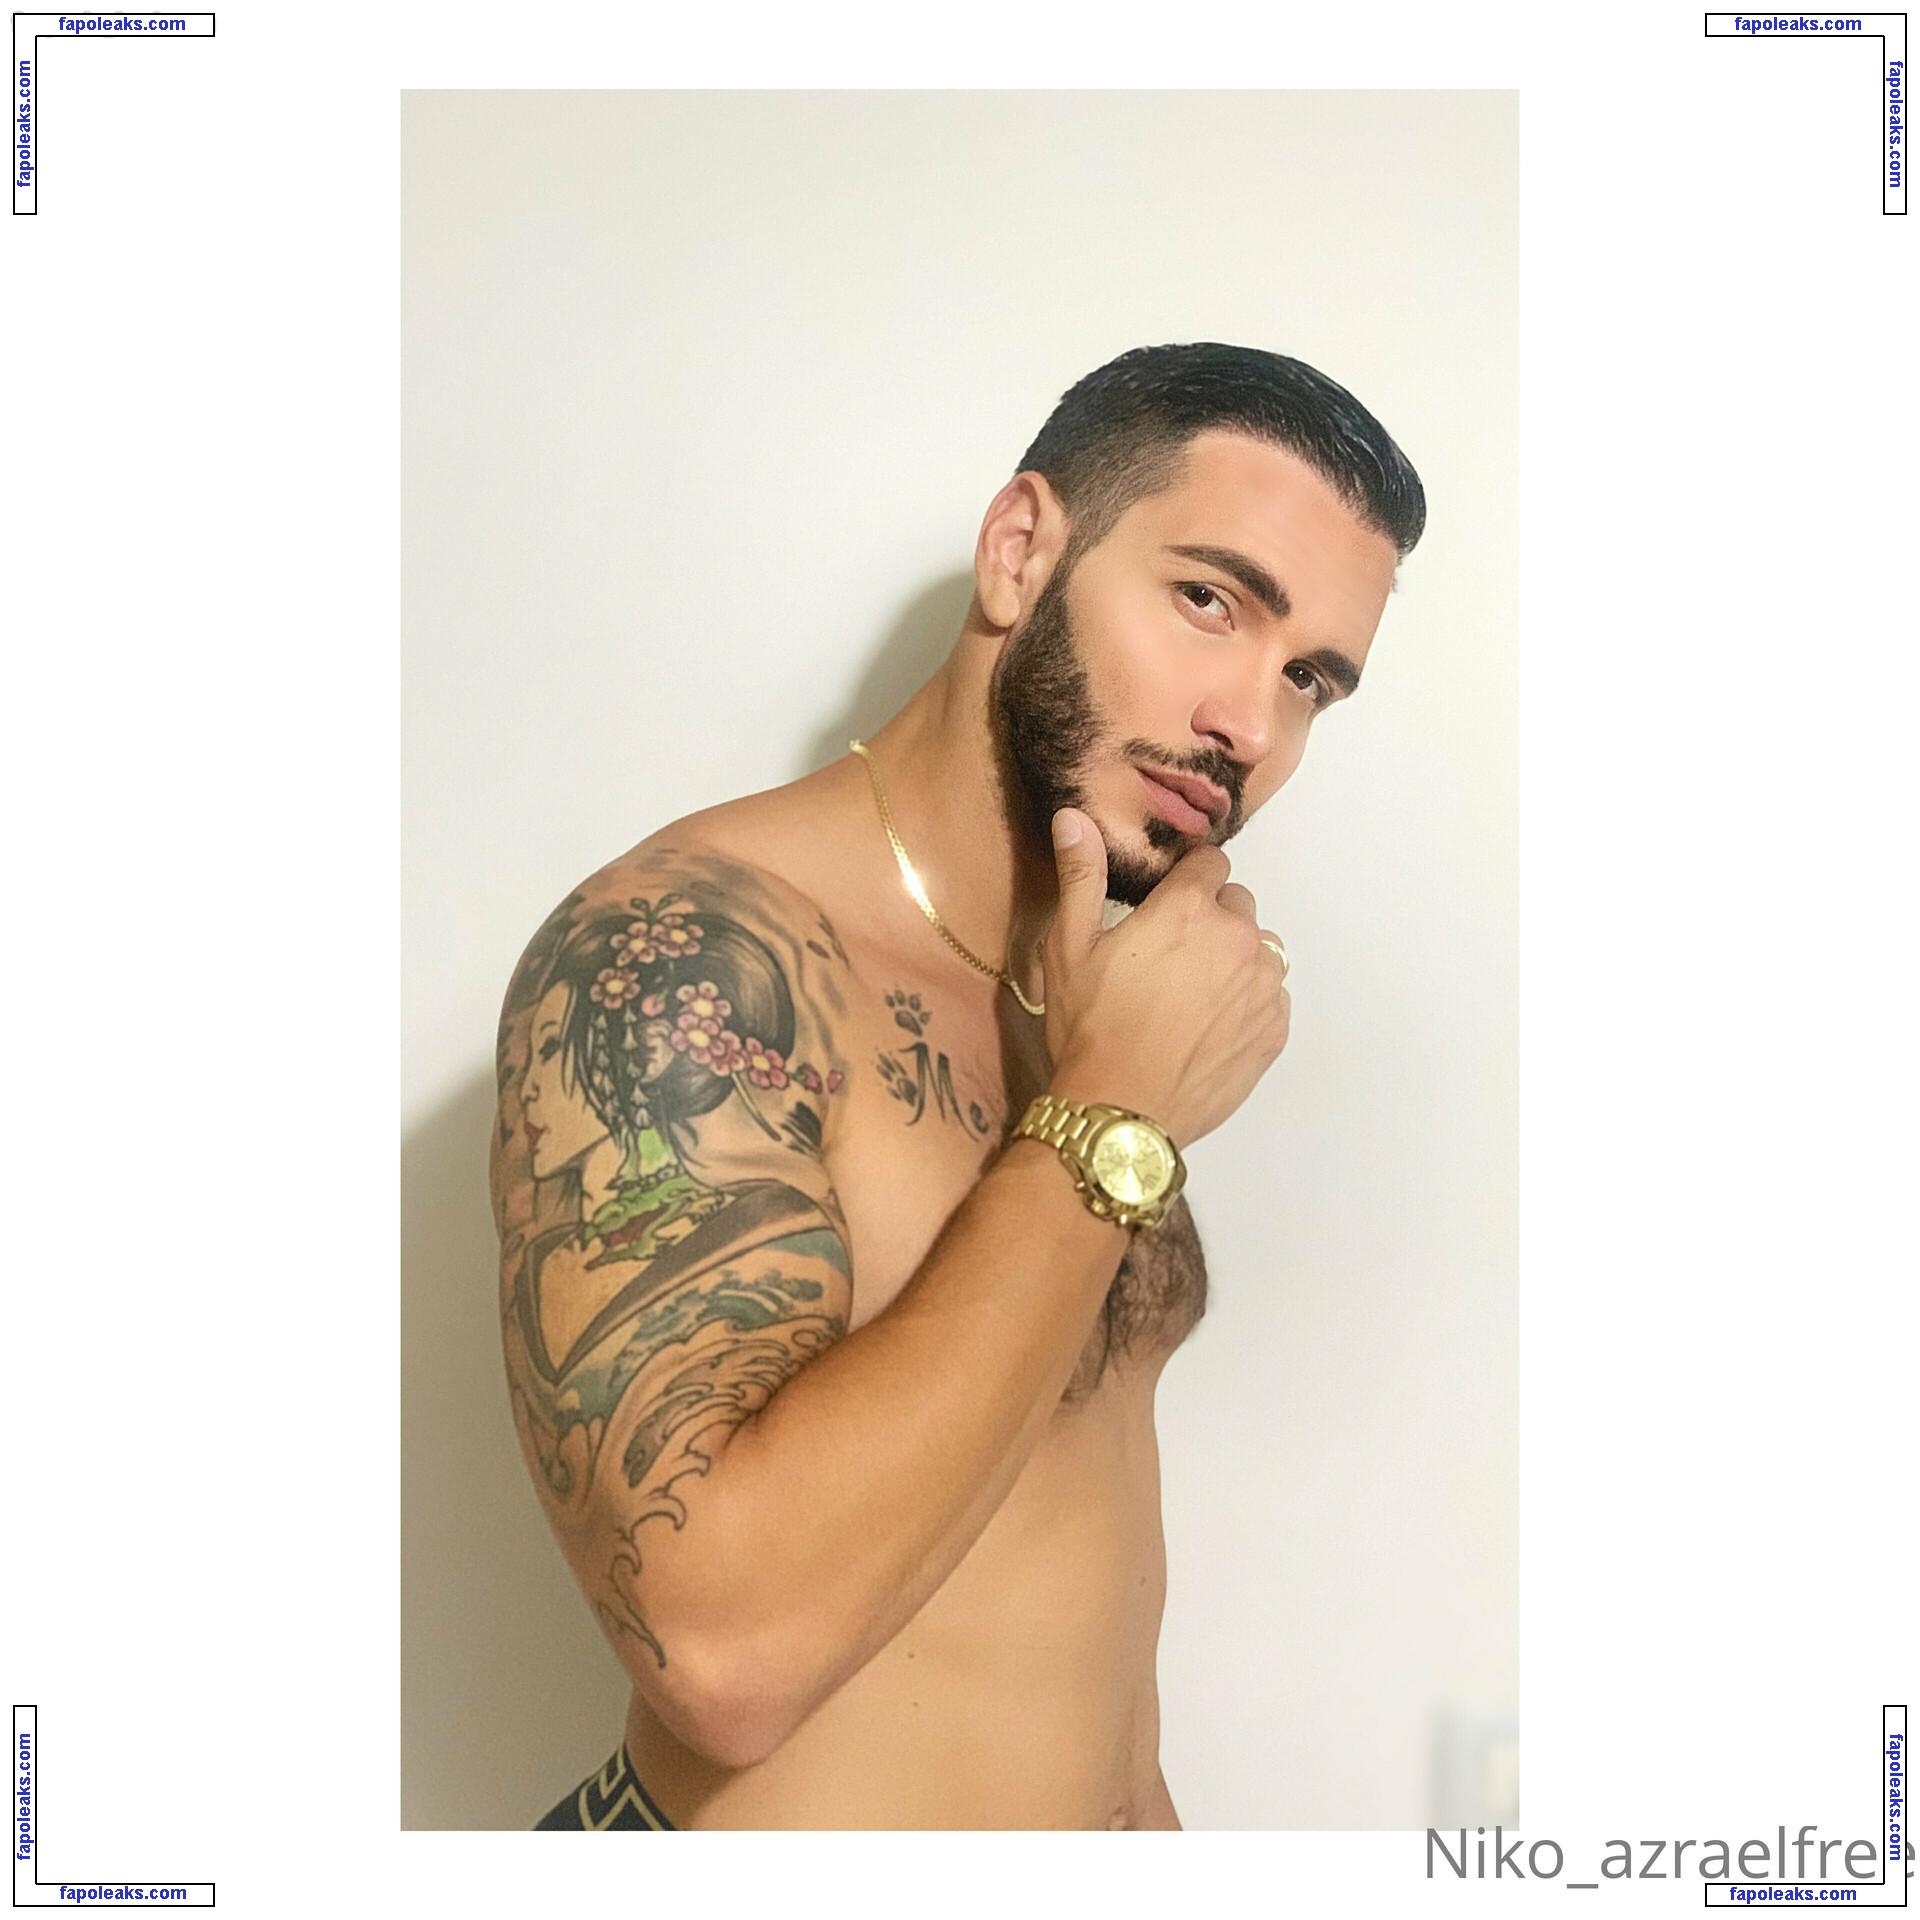 niko_azraelfree / nikoarapkiles nude photo #0018 from OnlyFans